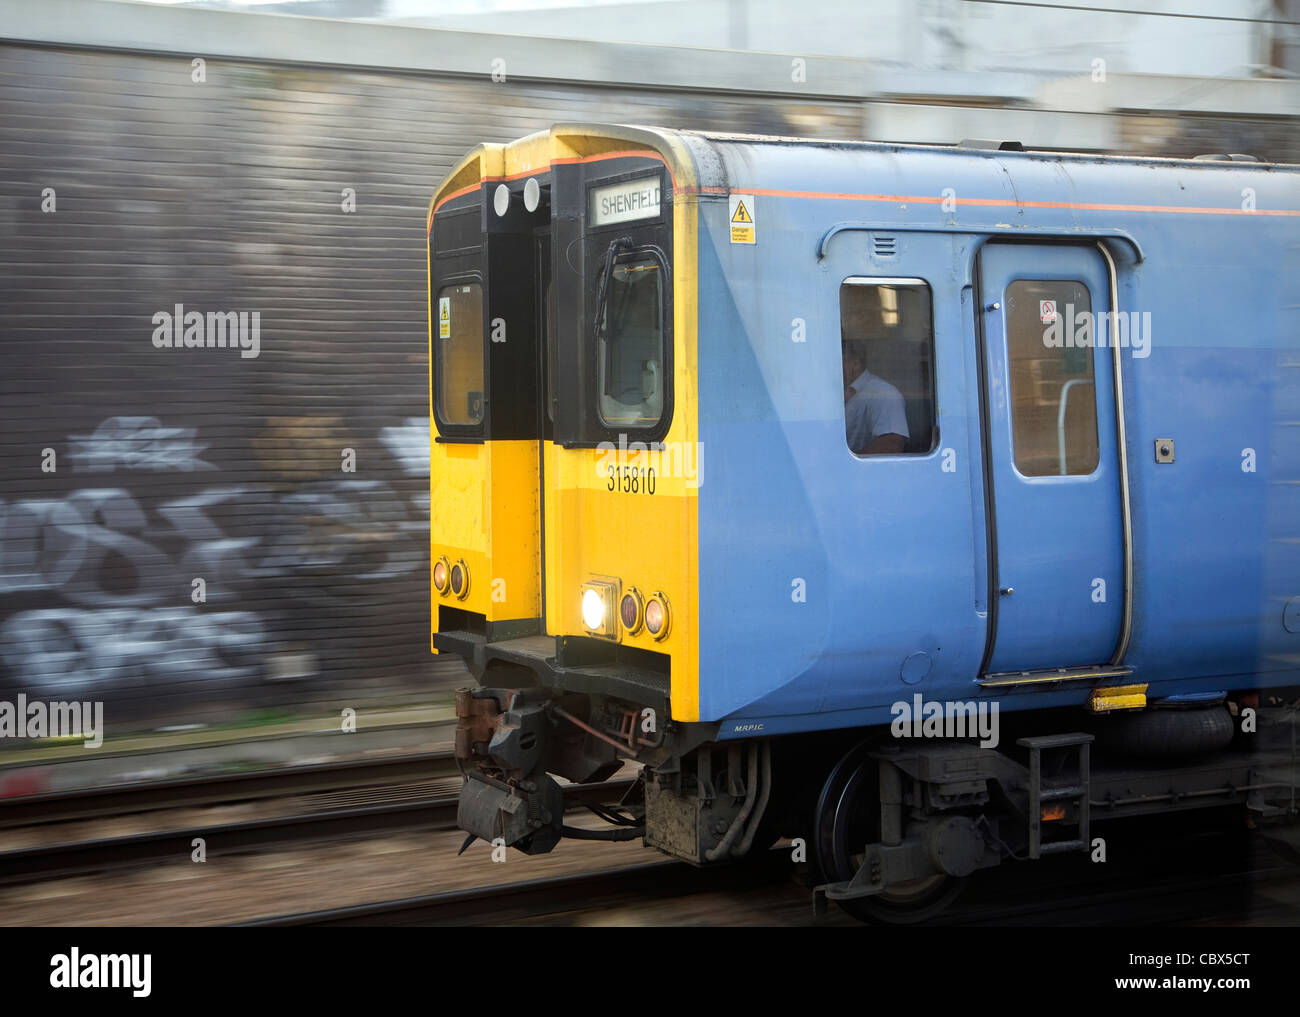 Treno locale per Shenfield lasciando Liverpool Street Stazione ferroviaria di Londra, Inghilterra Foto Stock